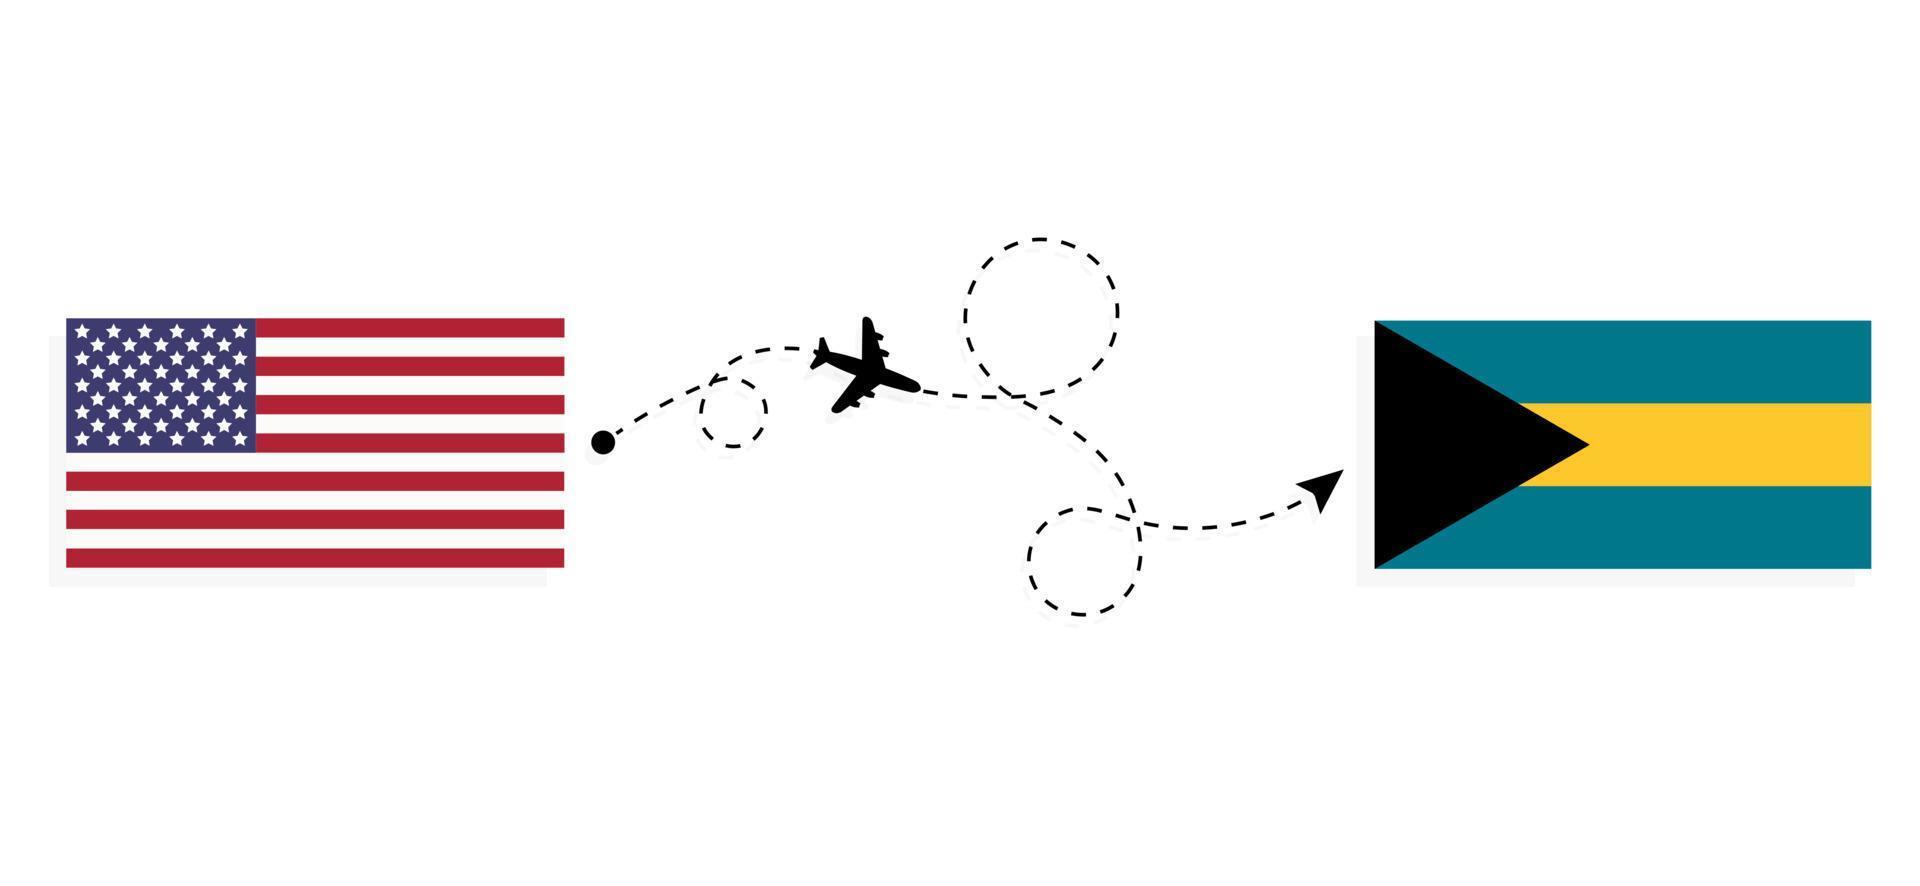 volo e viaggio dagli Stati Uniti alle Bahamas con il concetto di viaggio in aereo passeggeri vettore